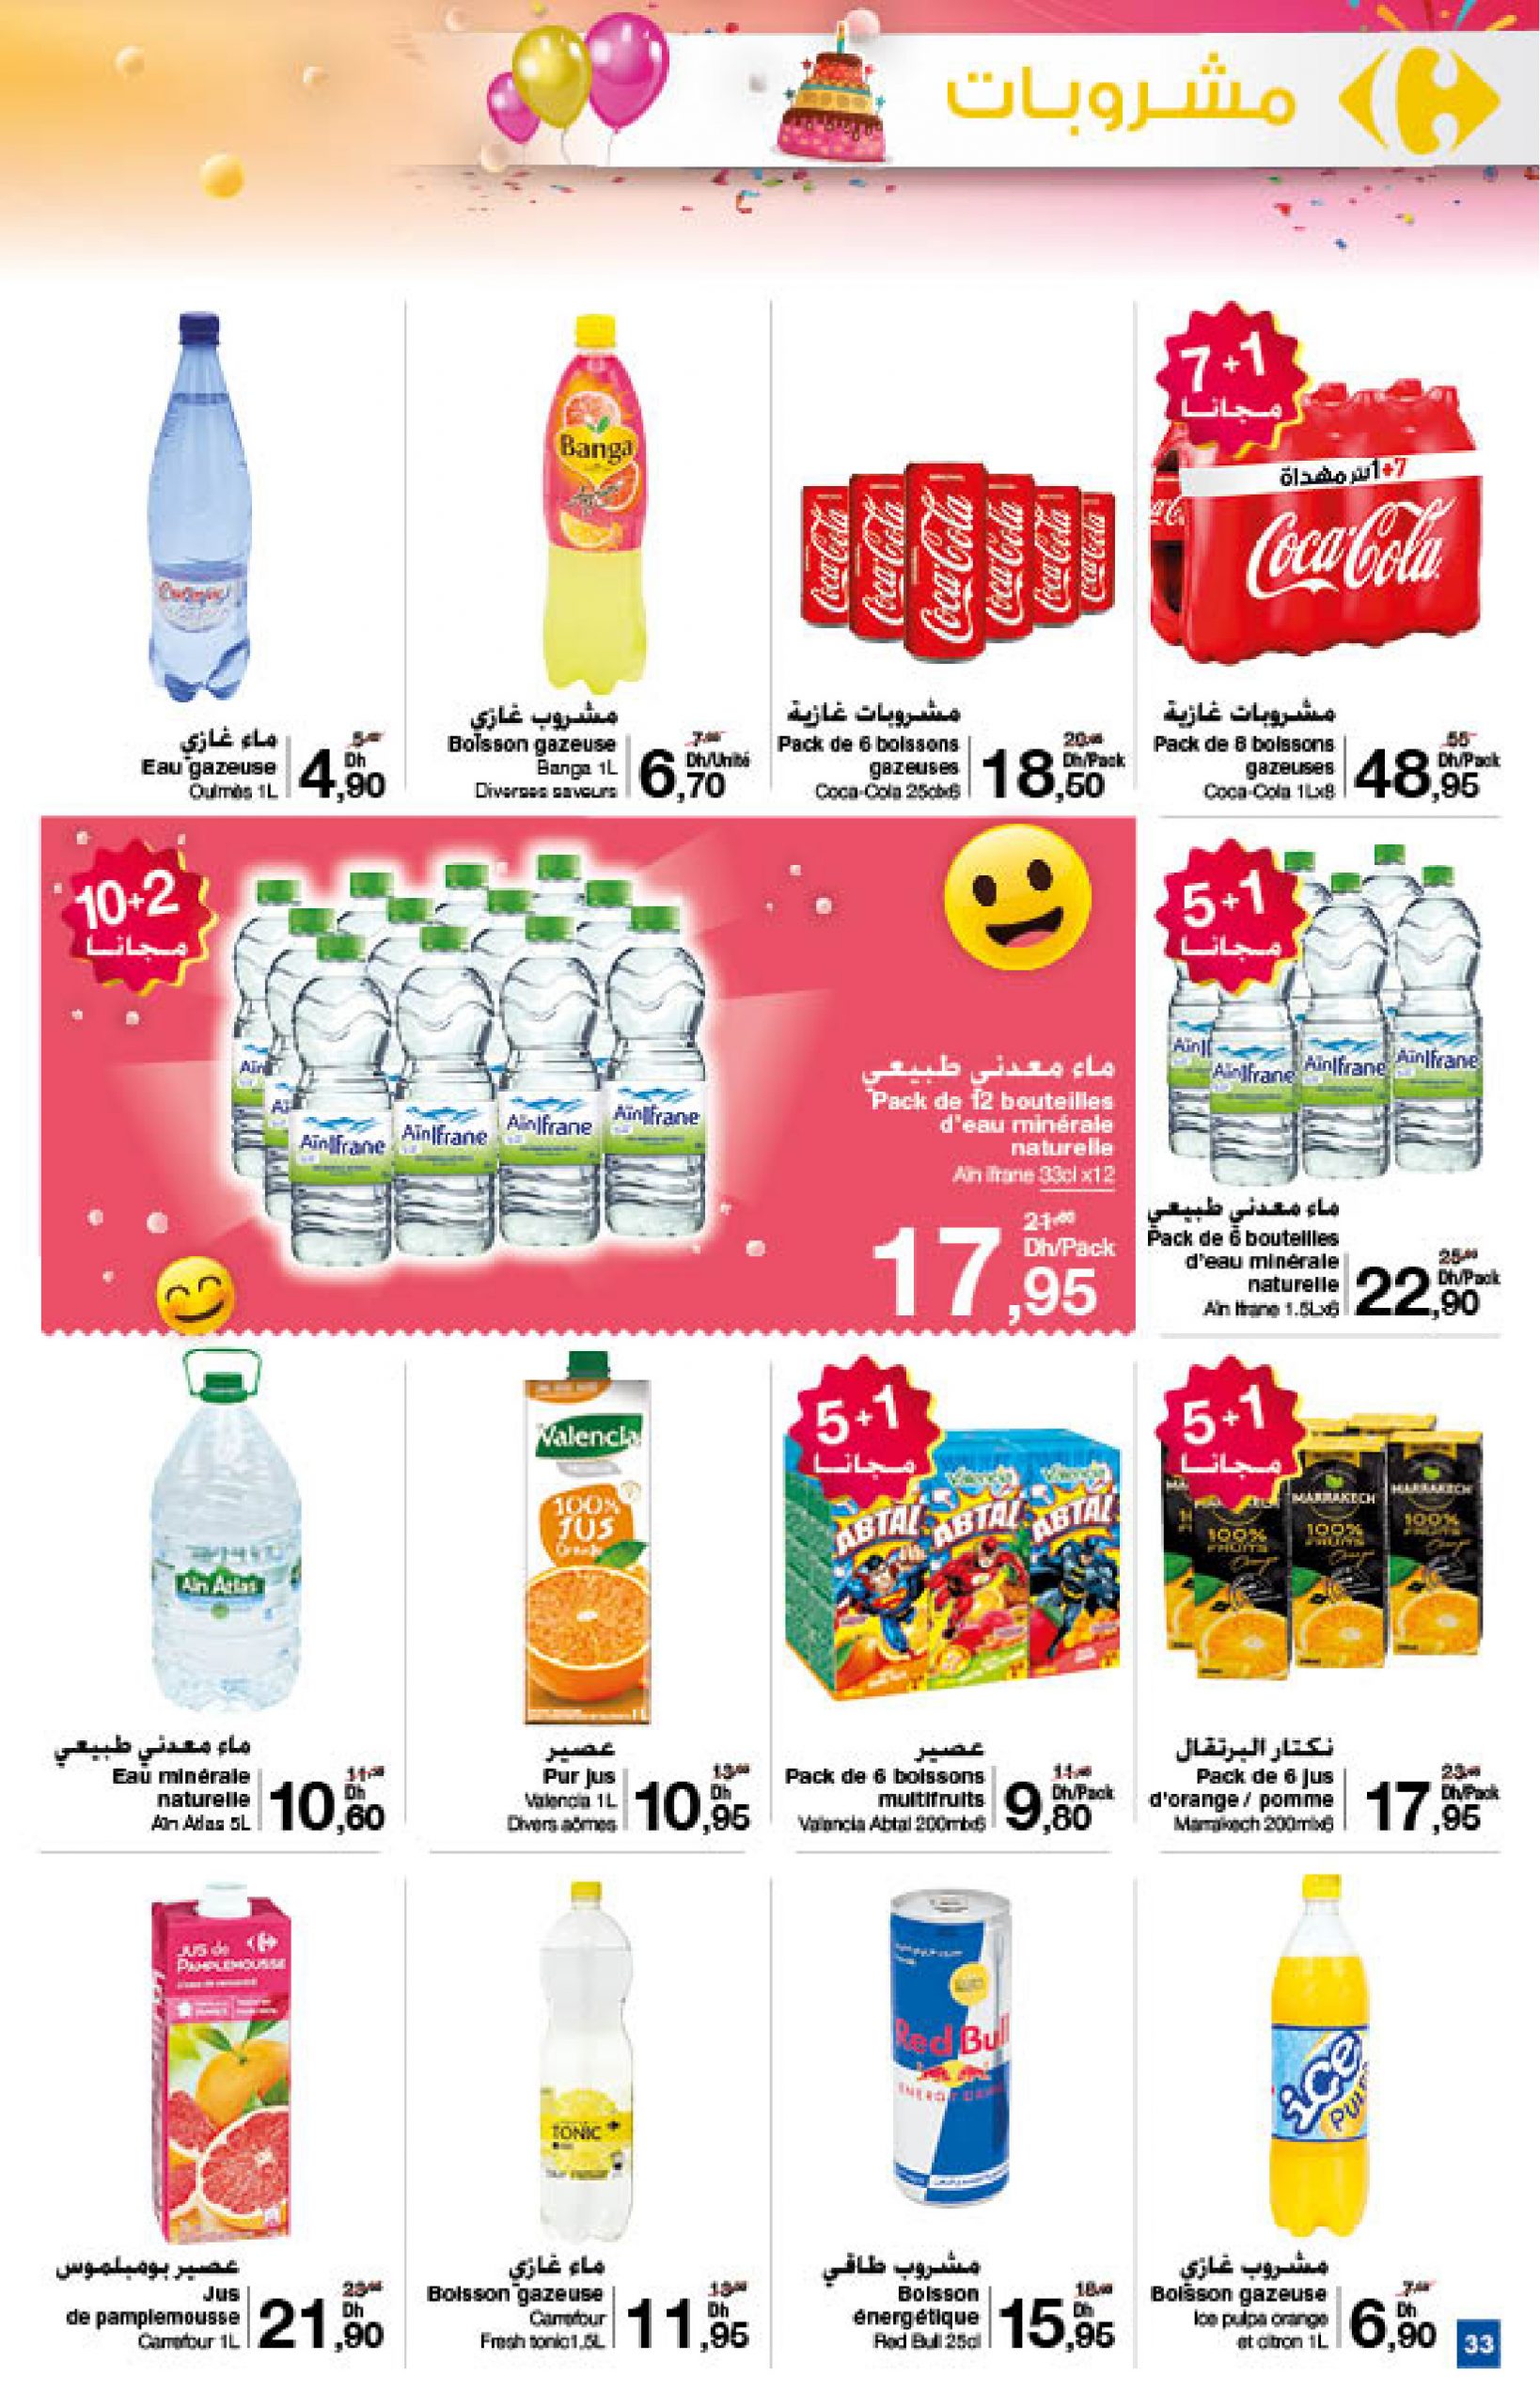 33-Nouveautés Carrefour Catalogue Novembre 2020